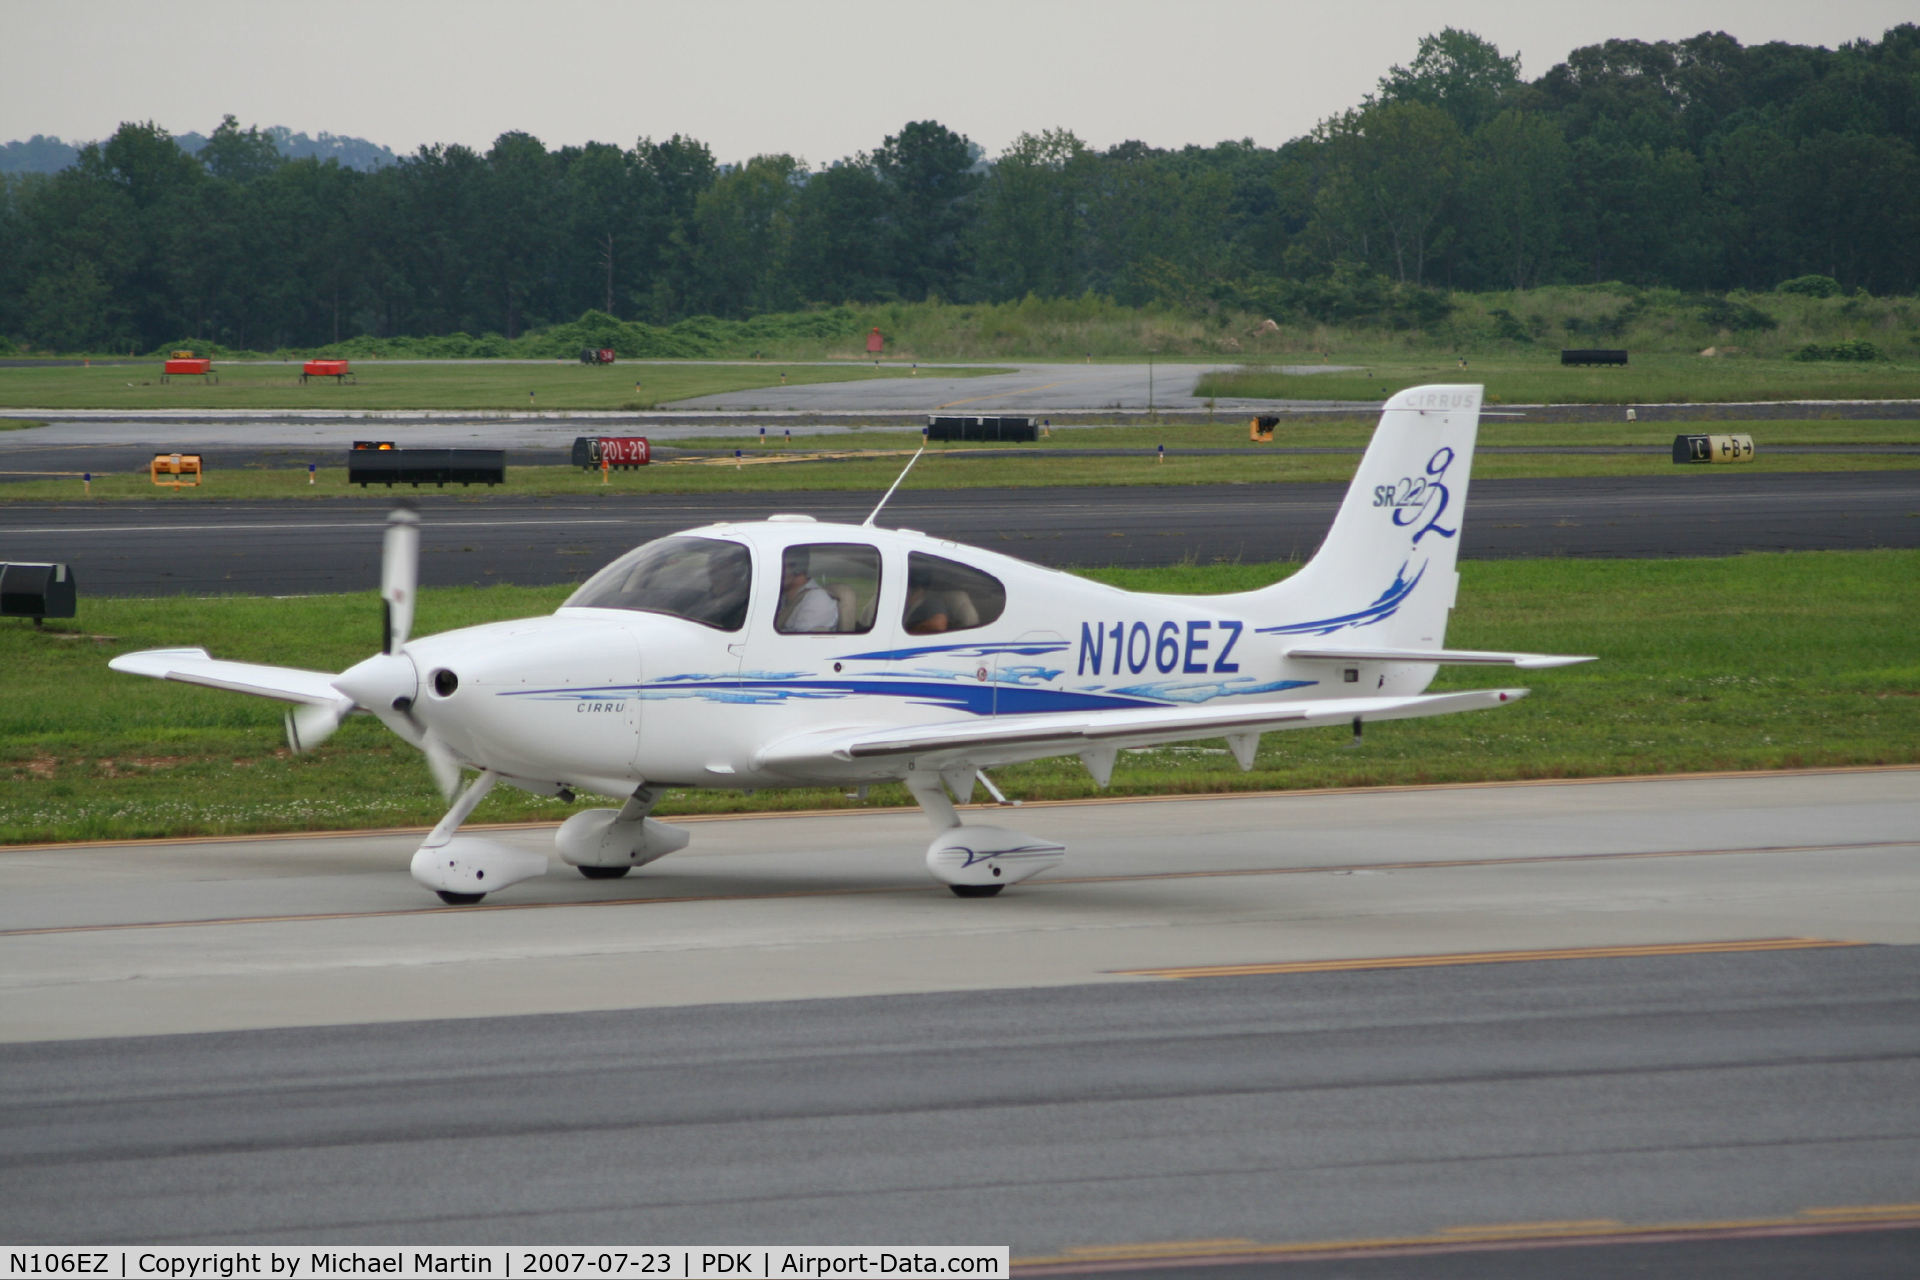 N106EZ, 2006 Cirrus SR22 G2 C/N 2044, Taxing to Epps Air Service